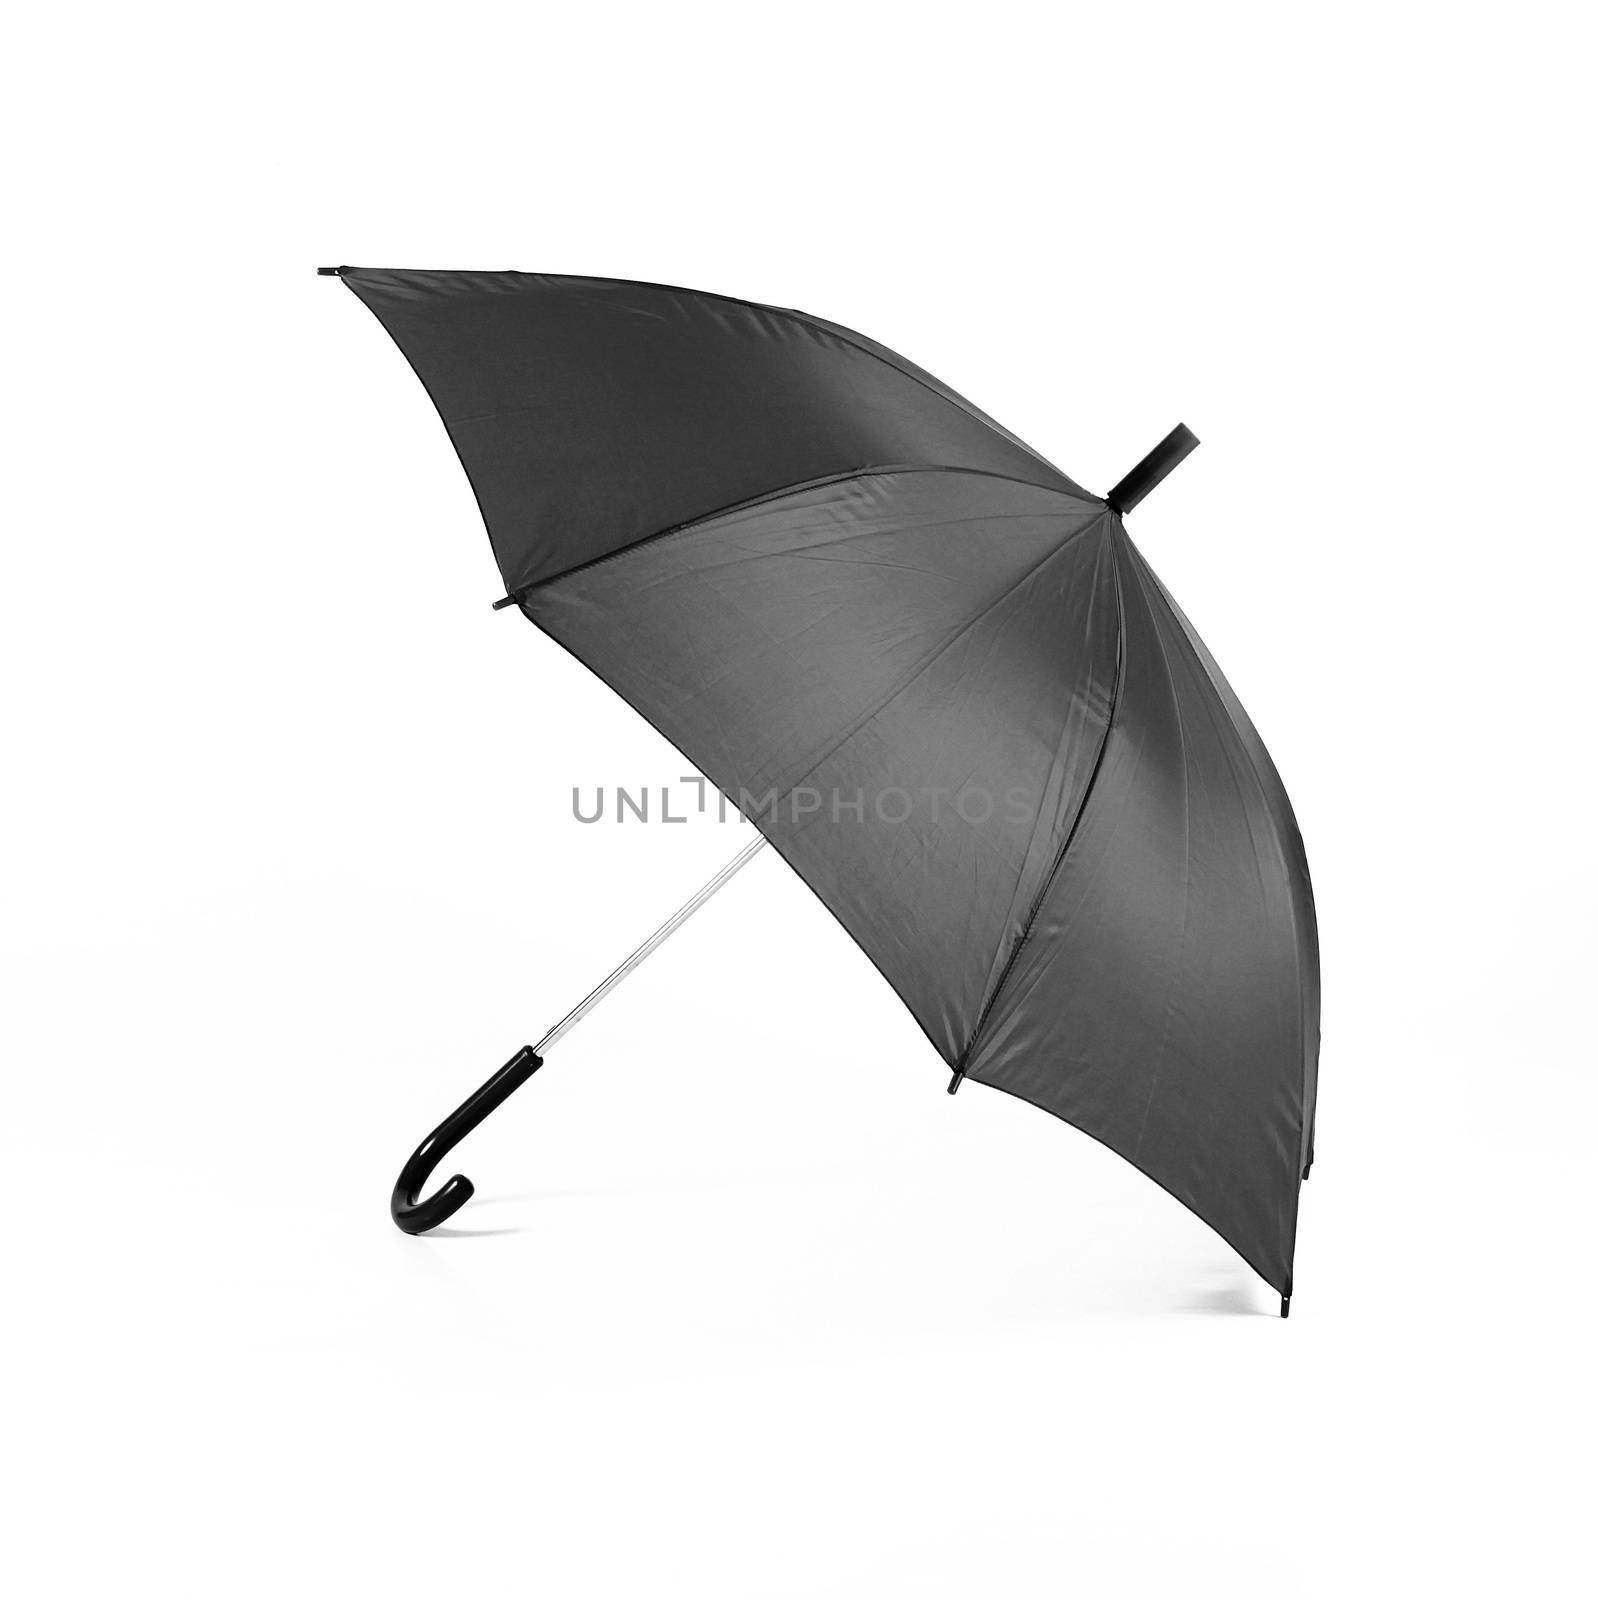 isolated black umbrella on white background